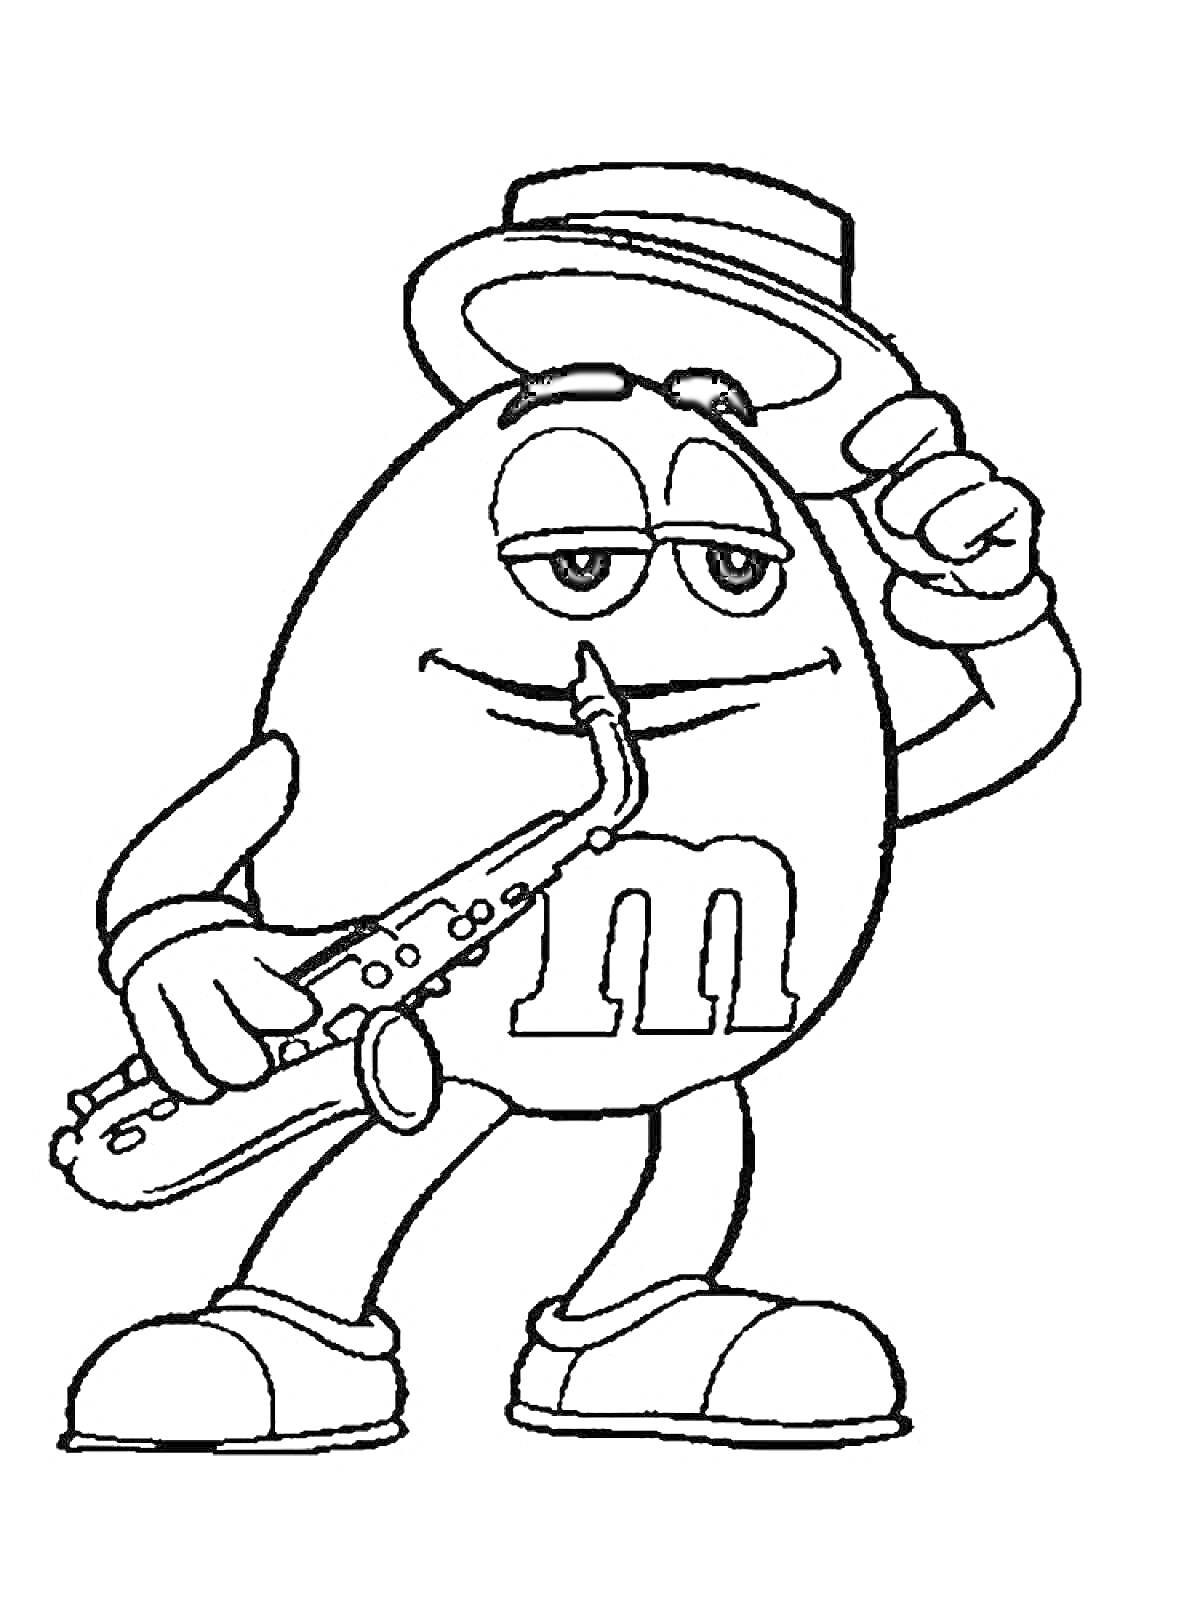 Раскраска Эмемдемс персонаж с саксофоном и шляпой